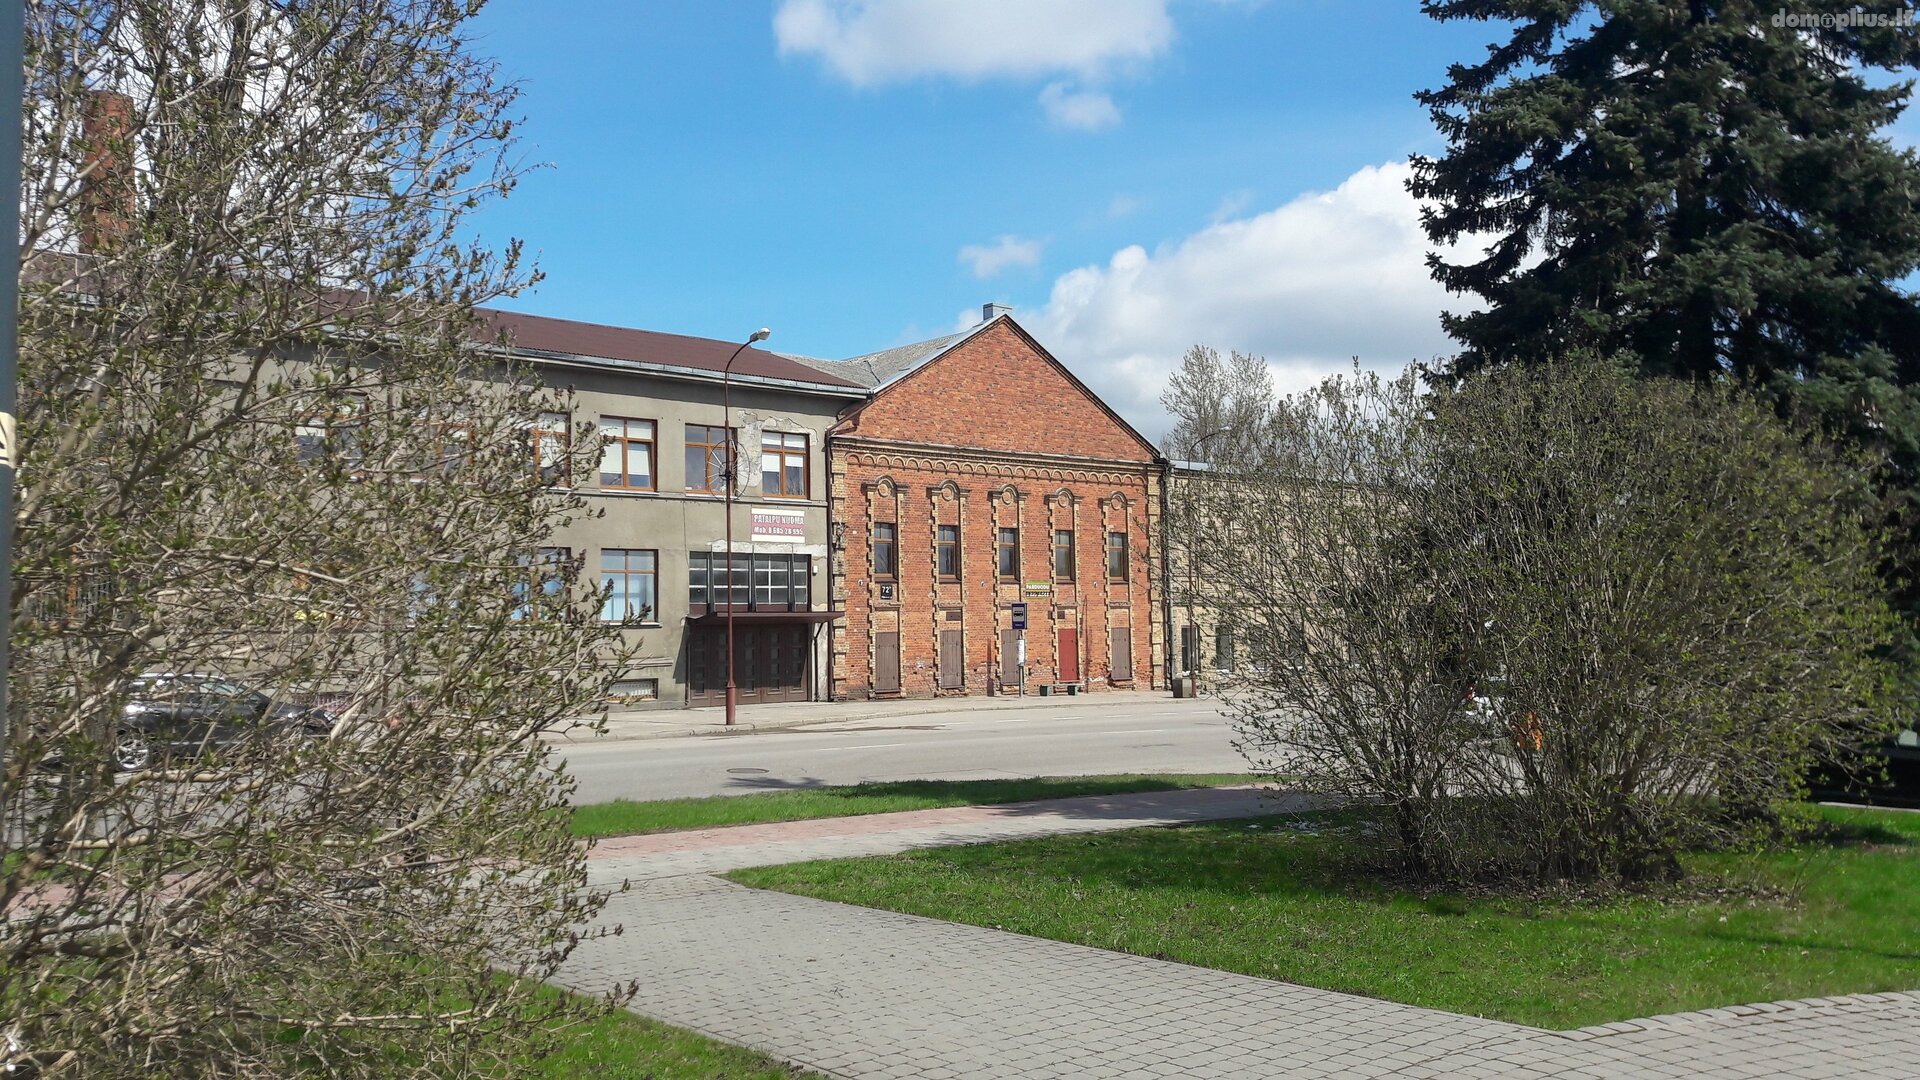 For sale Office / Storage / Tourism and recreation premises Šiauliuose, Šimšėje, Vilniaus g.